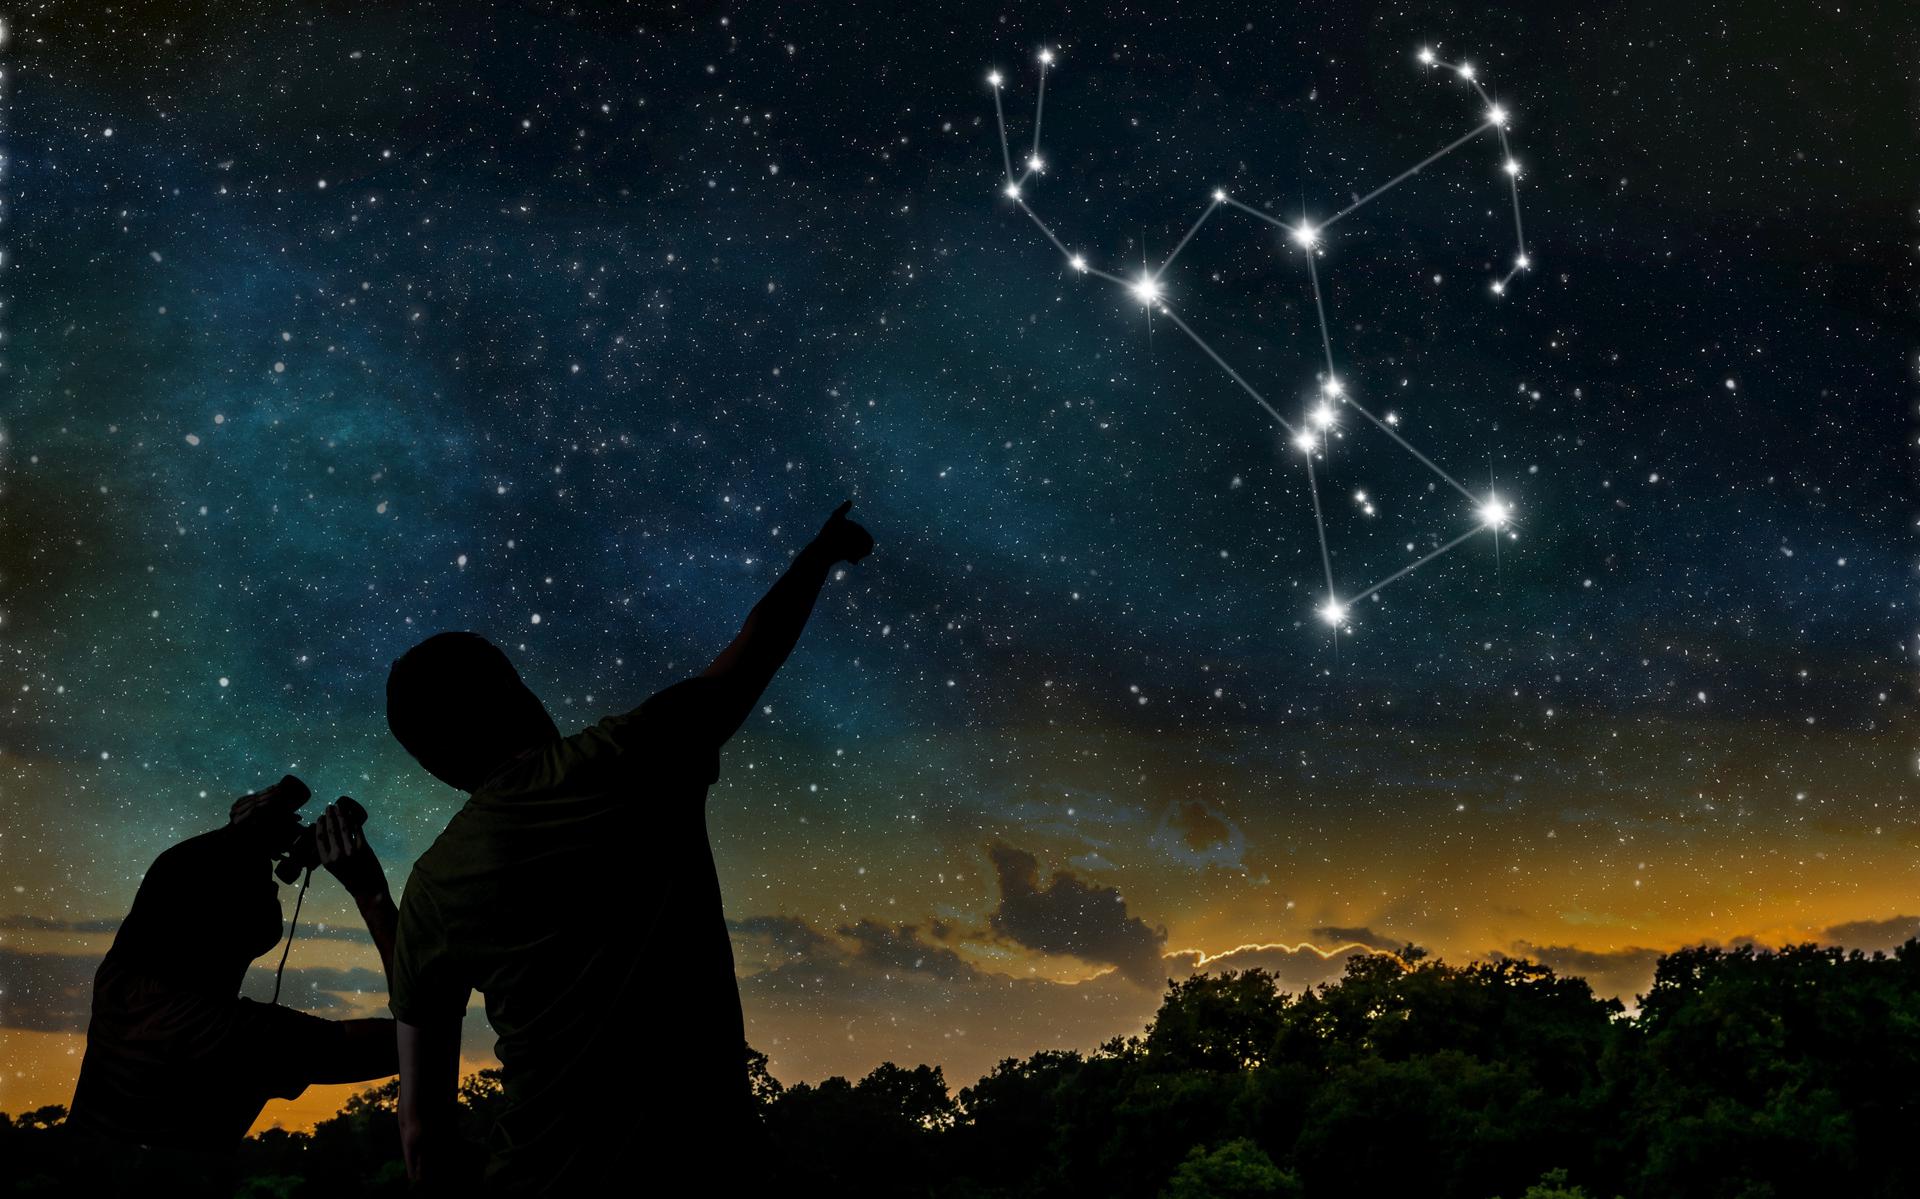 Help de RUG mee om sterren in het sterrenbeeld Orion te tellen. 